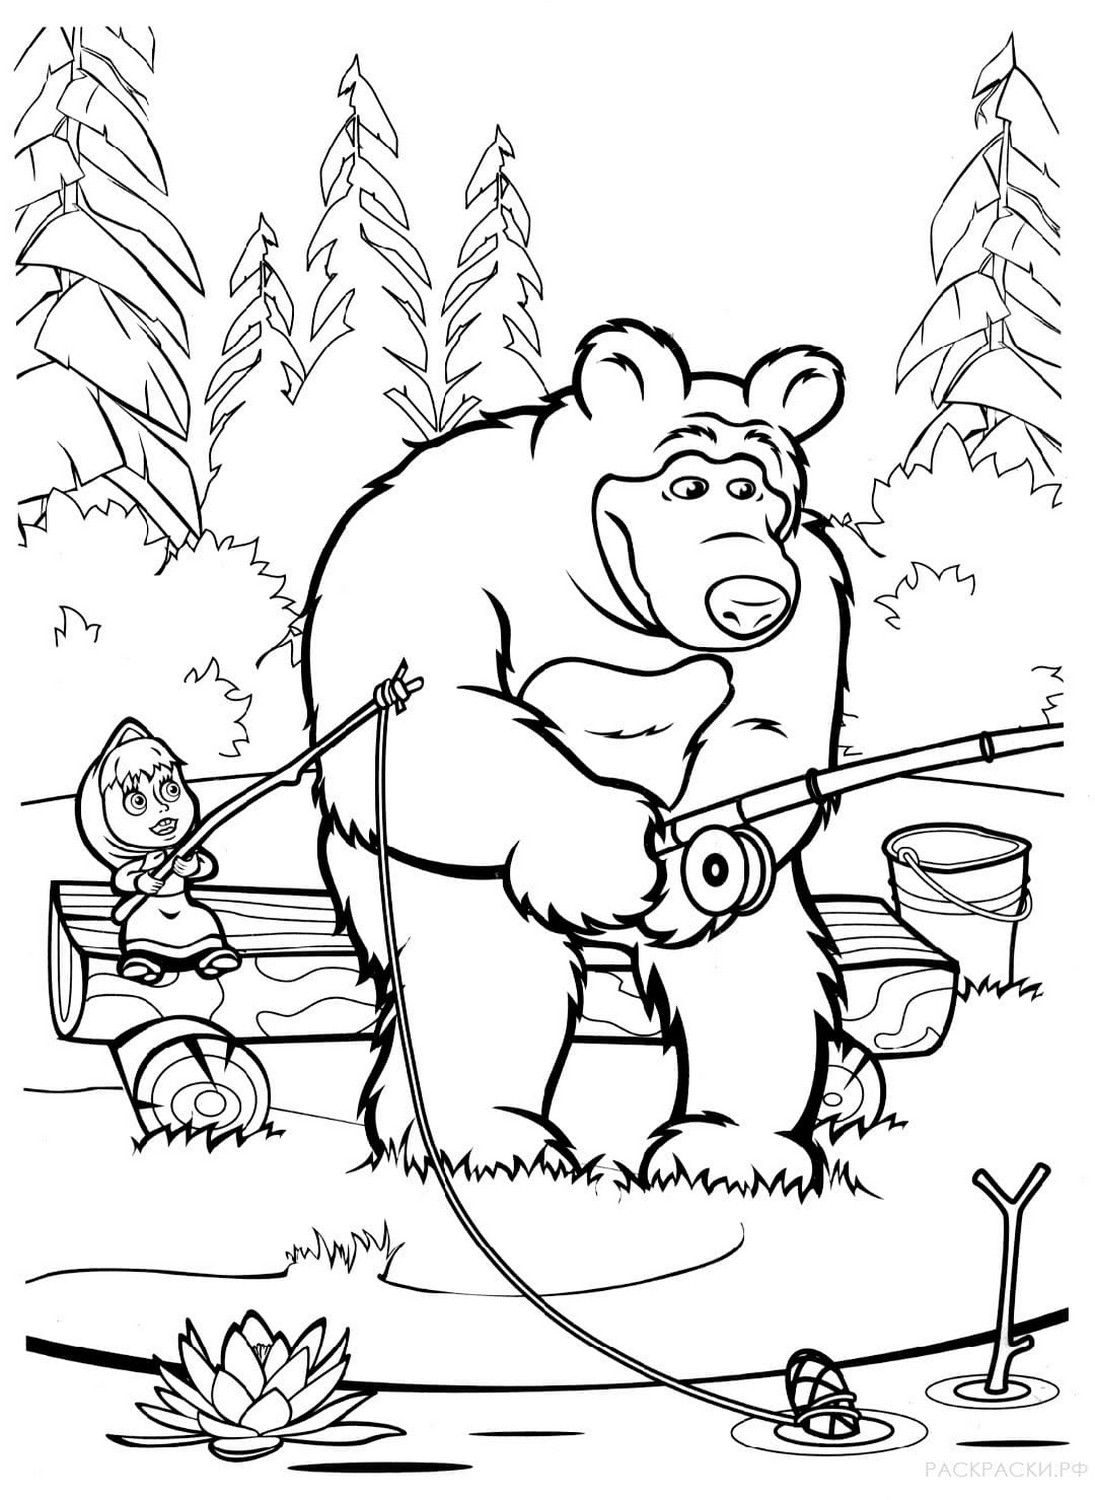 Dibujo 46 de Masha y el oso para imprimir y colorear